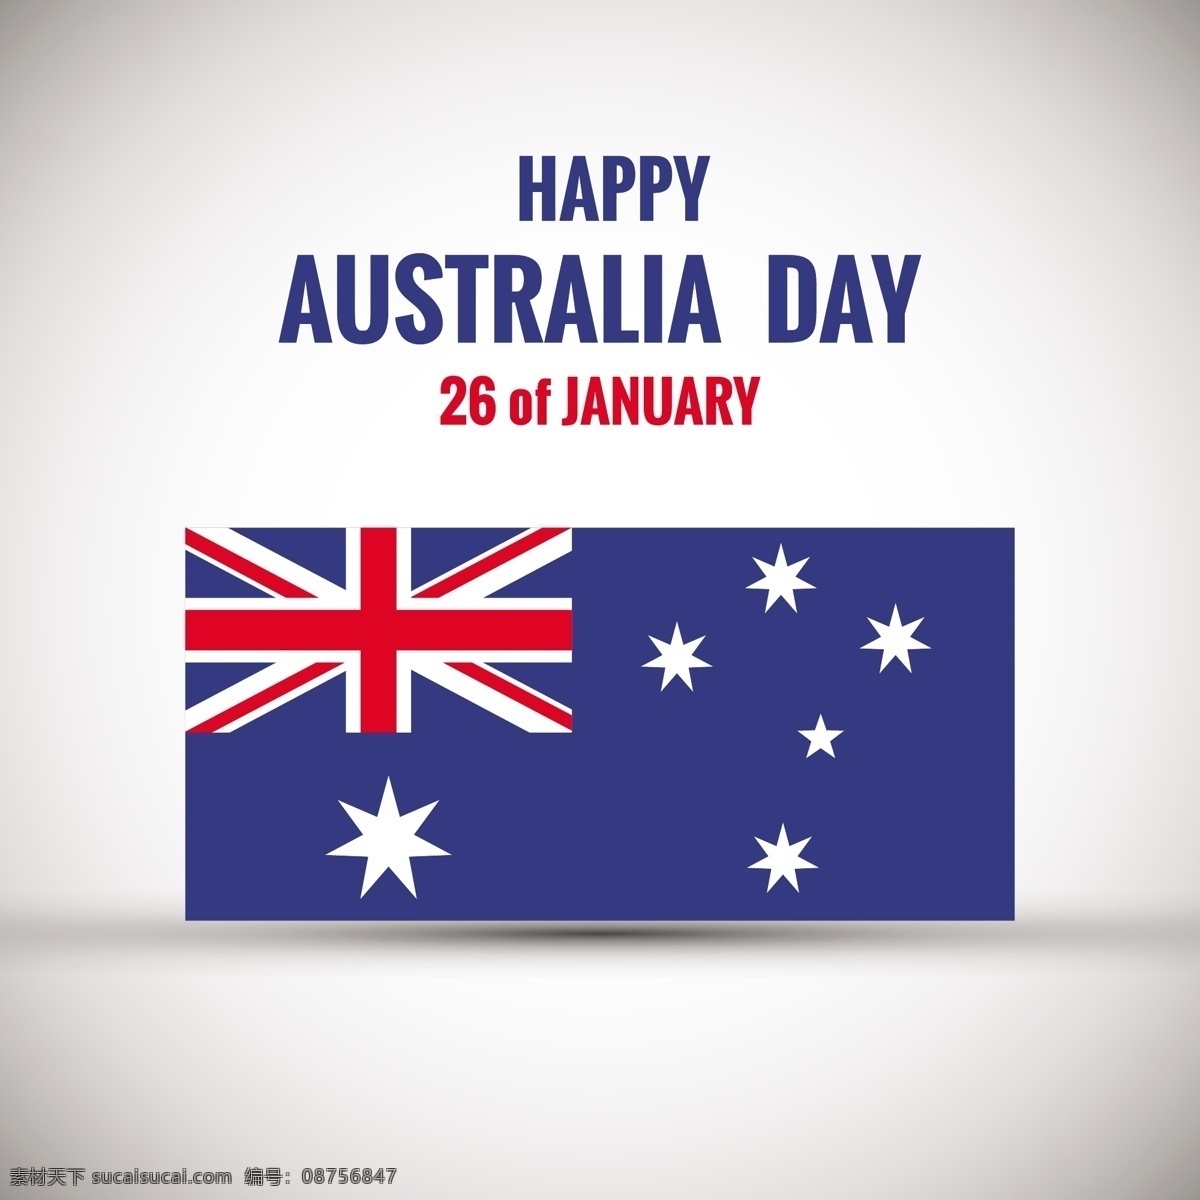 澳大利亚天卡 背景 抽象 卡片 标志 快乐 独立日 国家 澳大利亚 日 爱国 悉尼 独立 民族 白色